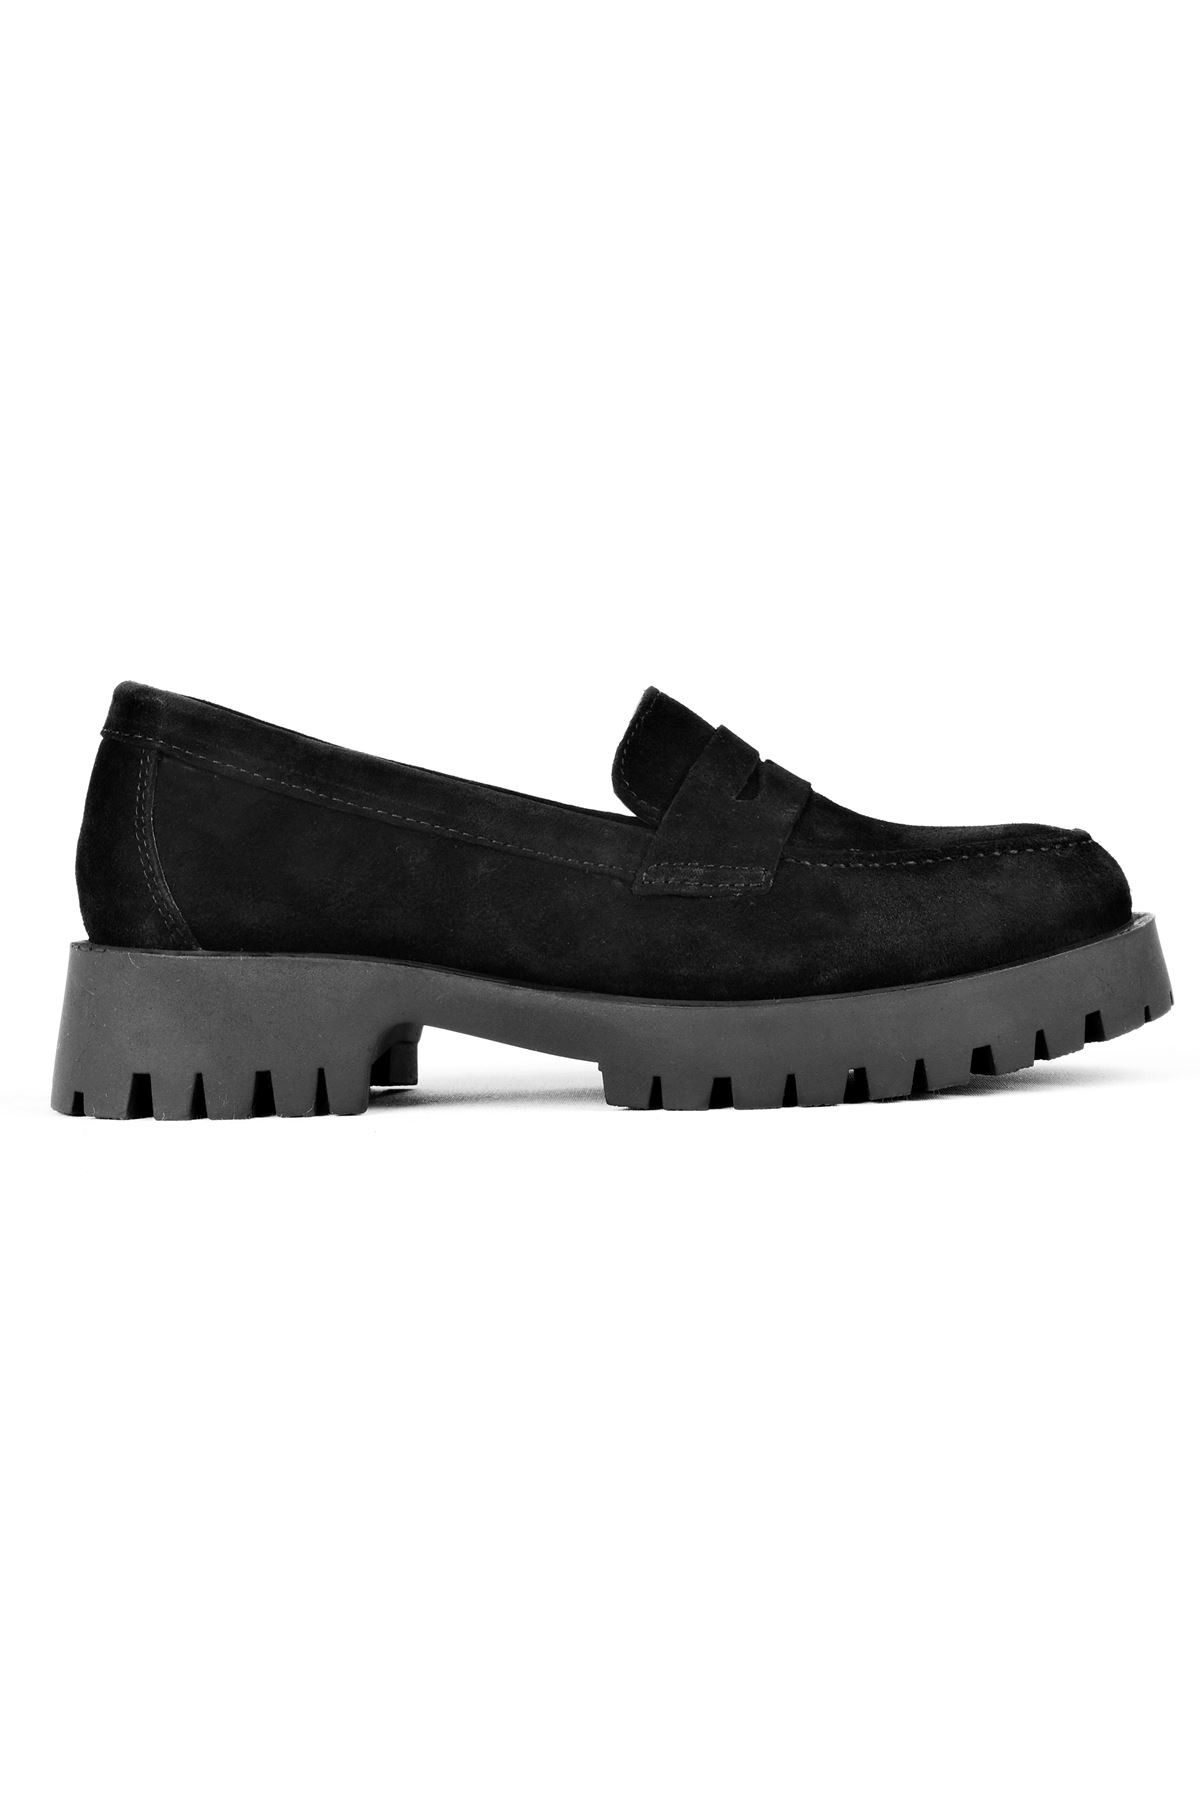 Deva Kadın Hakiki Deri Oxford Ayakkabı Düz Model - S.Siyah